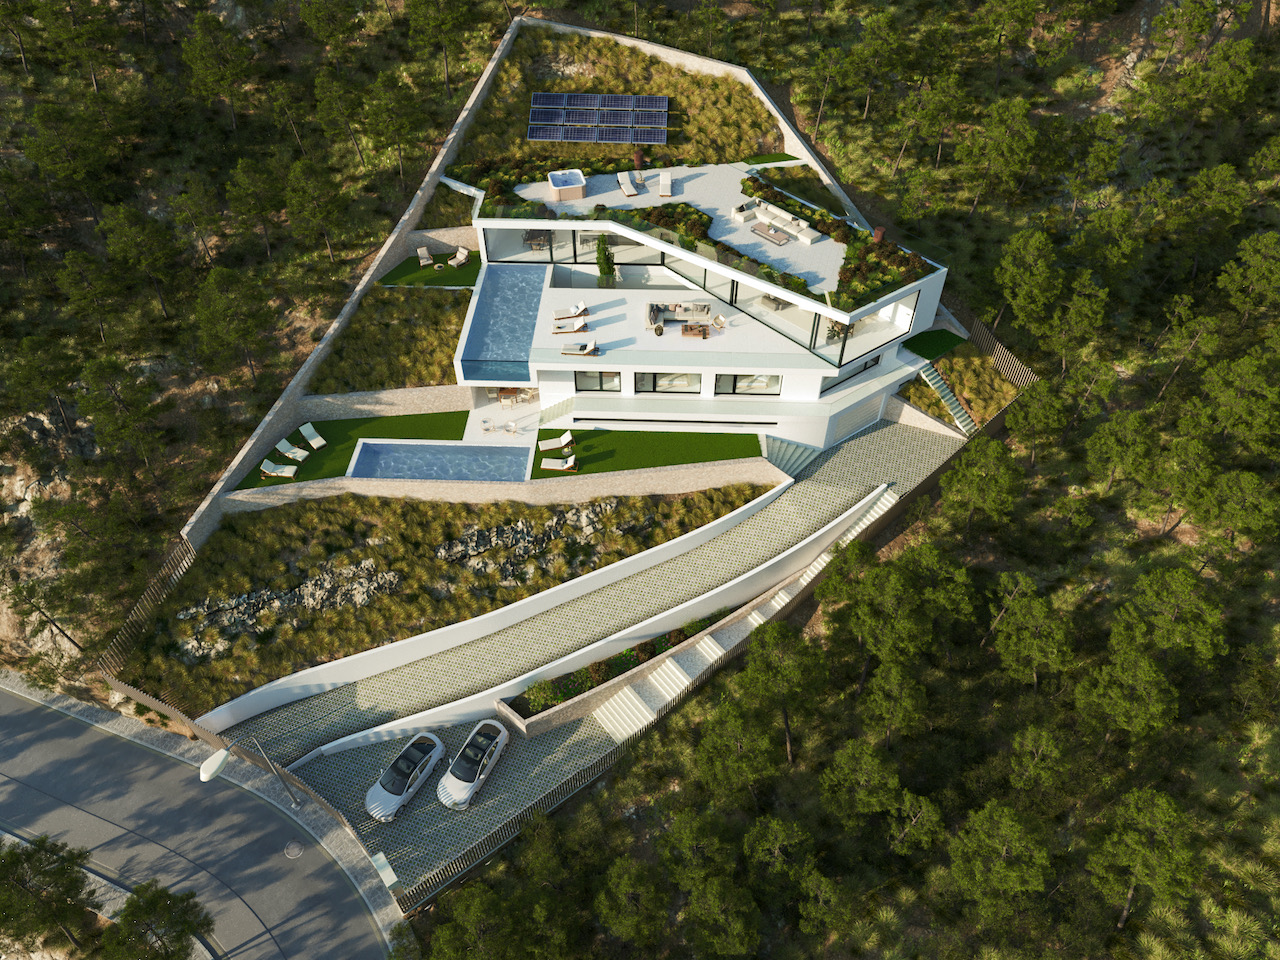 Eco villa project with sea views in Costa den Blanes, Mallorca.